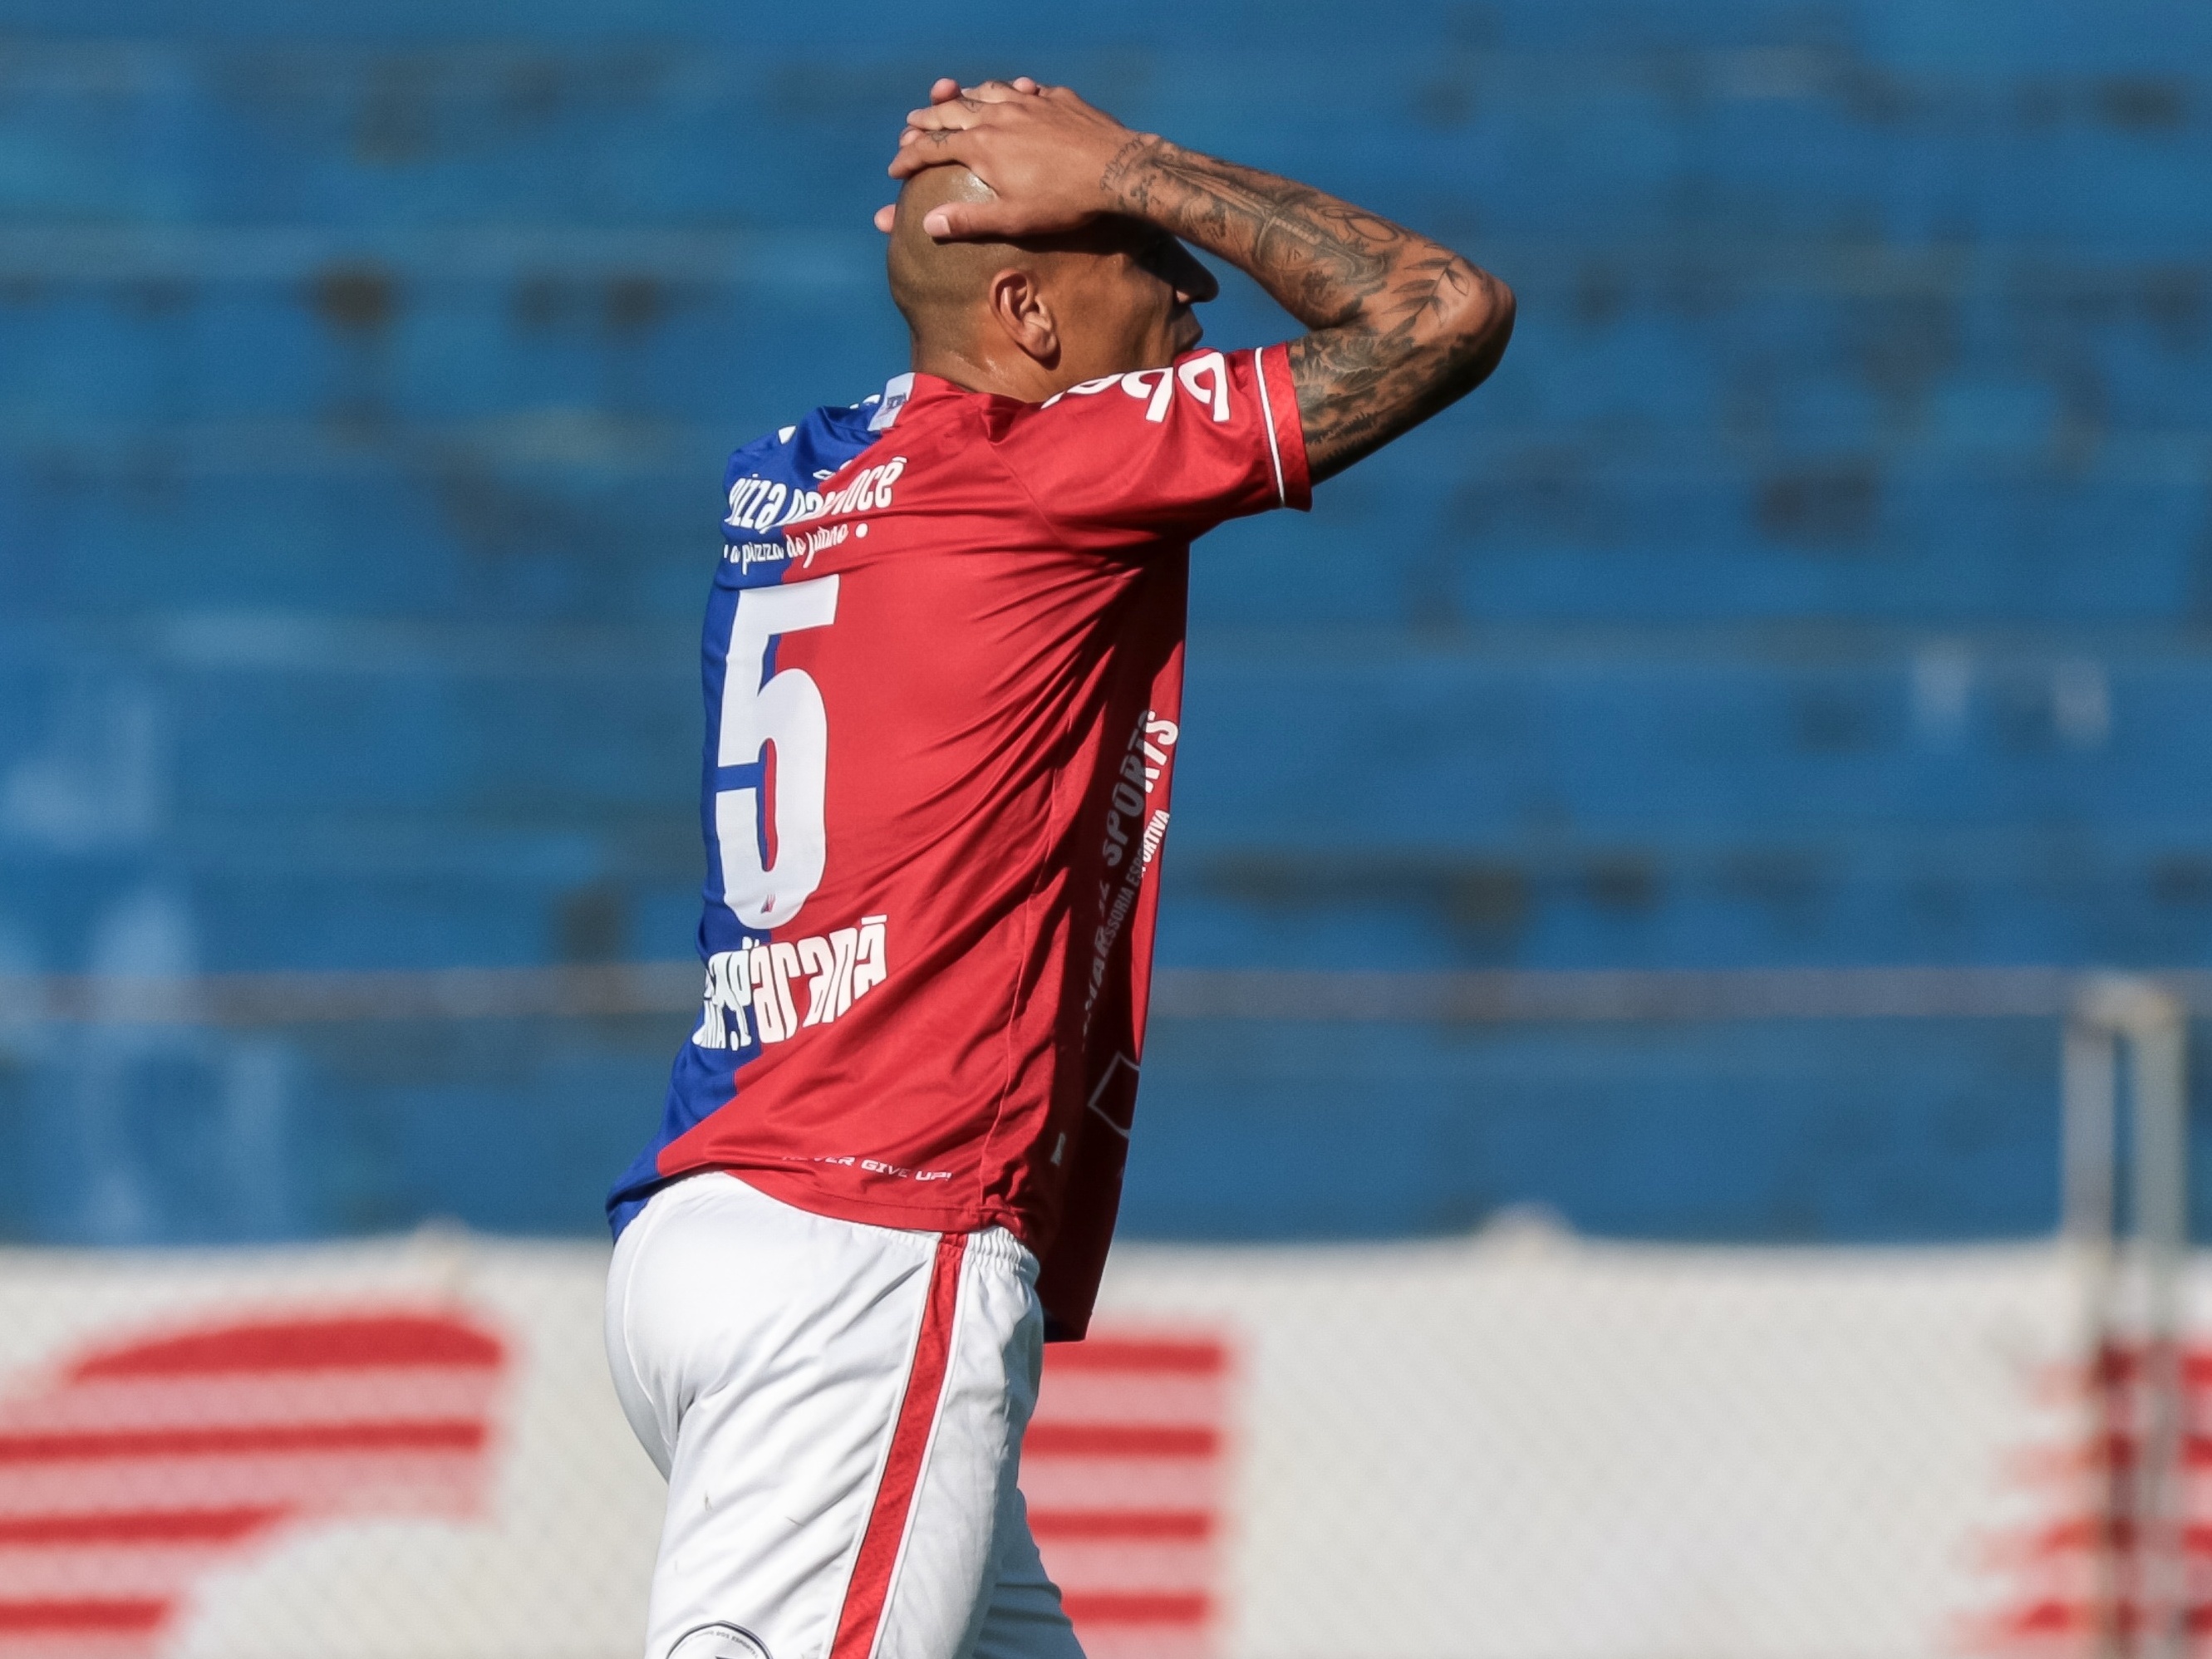 Como montar o Atlético Paranaense no Fifa 18 - Bem Paraná